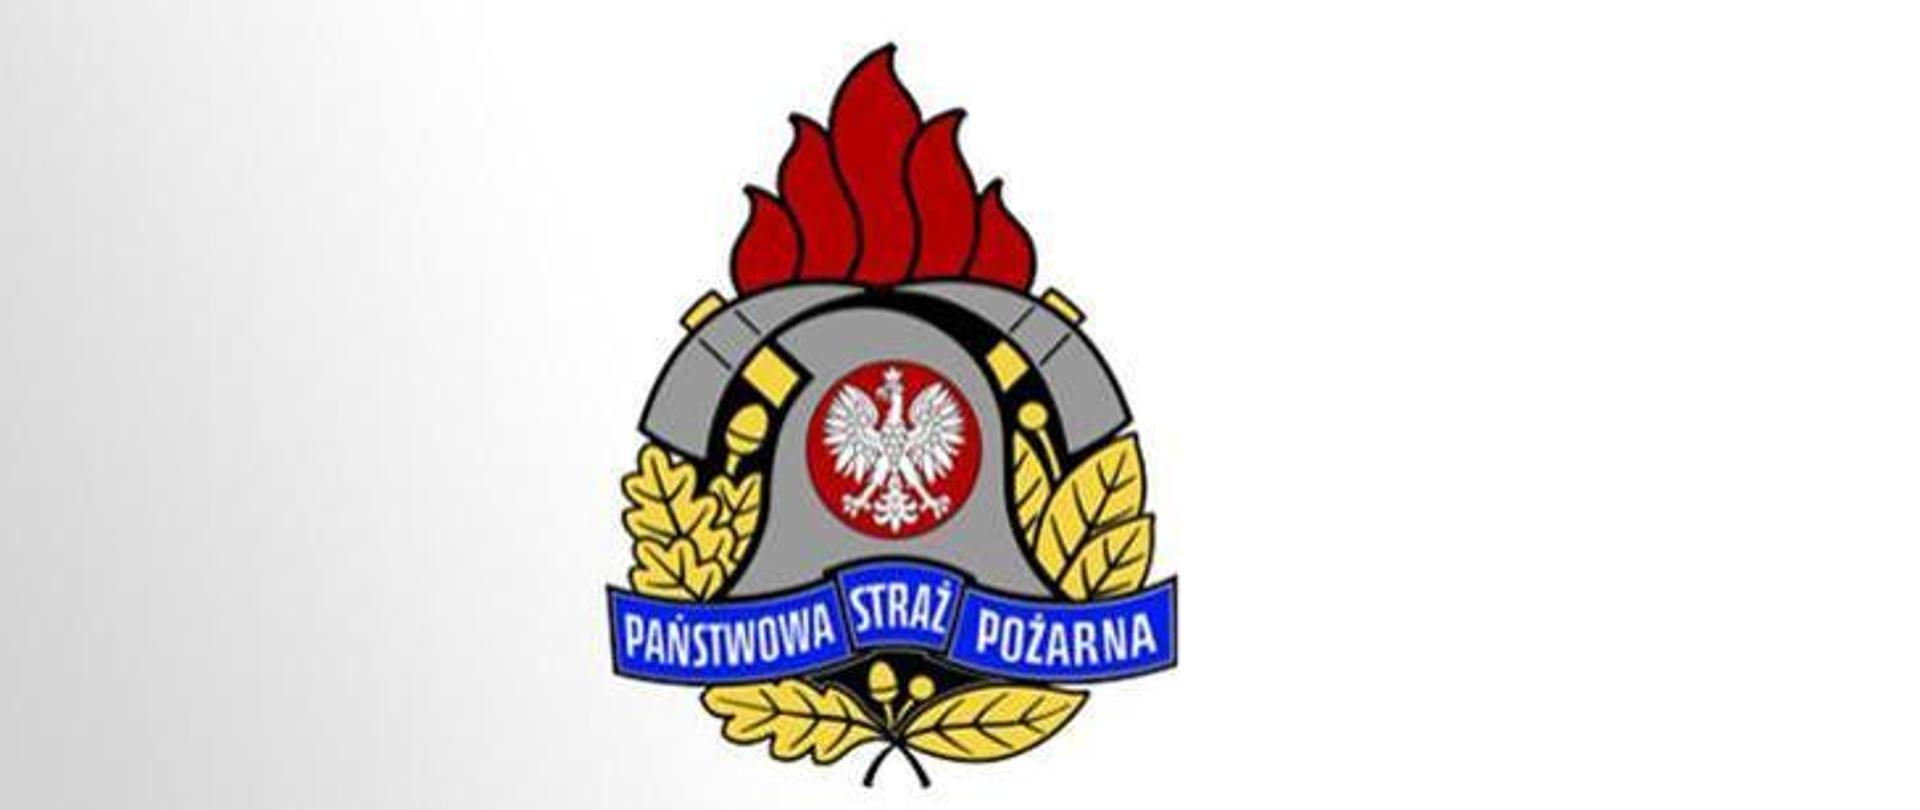 zdjęcie przedstawia herb Państwowej Straży Pożarnej 